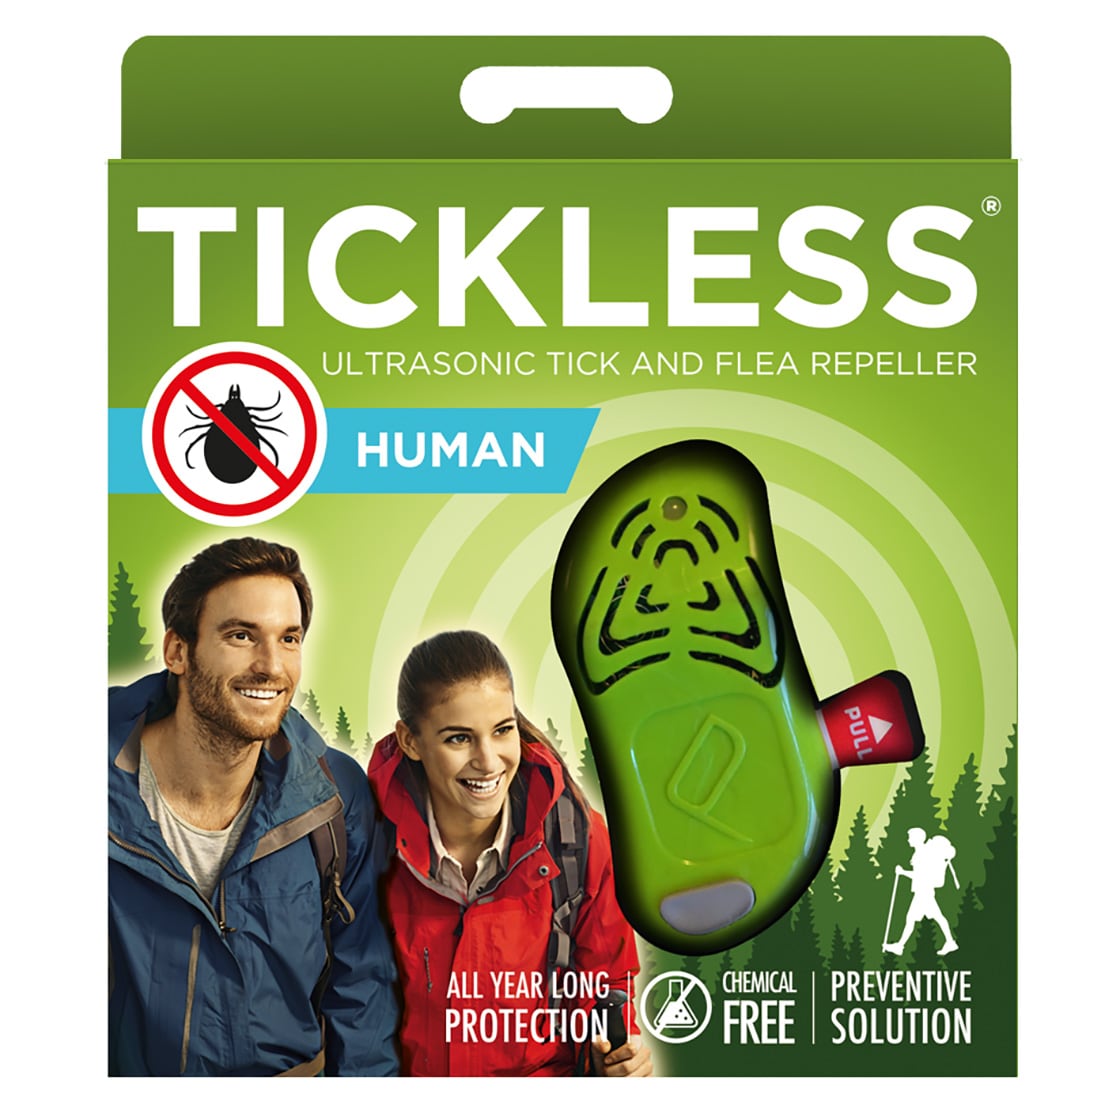 Ultradźwiękowa ochrona przed kleszczami TickLess Human - dla ludzi - Green